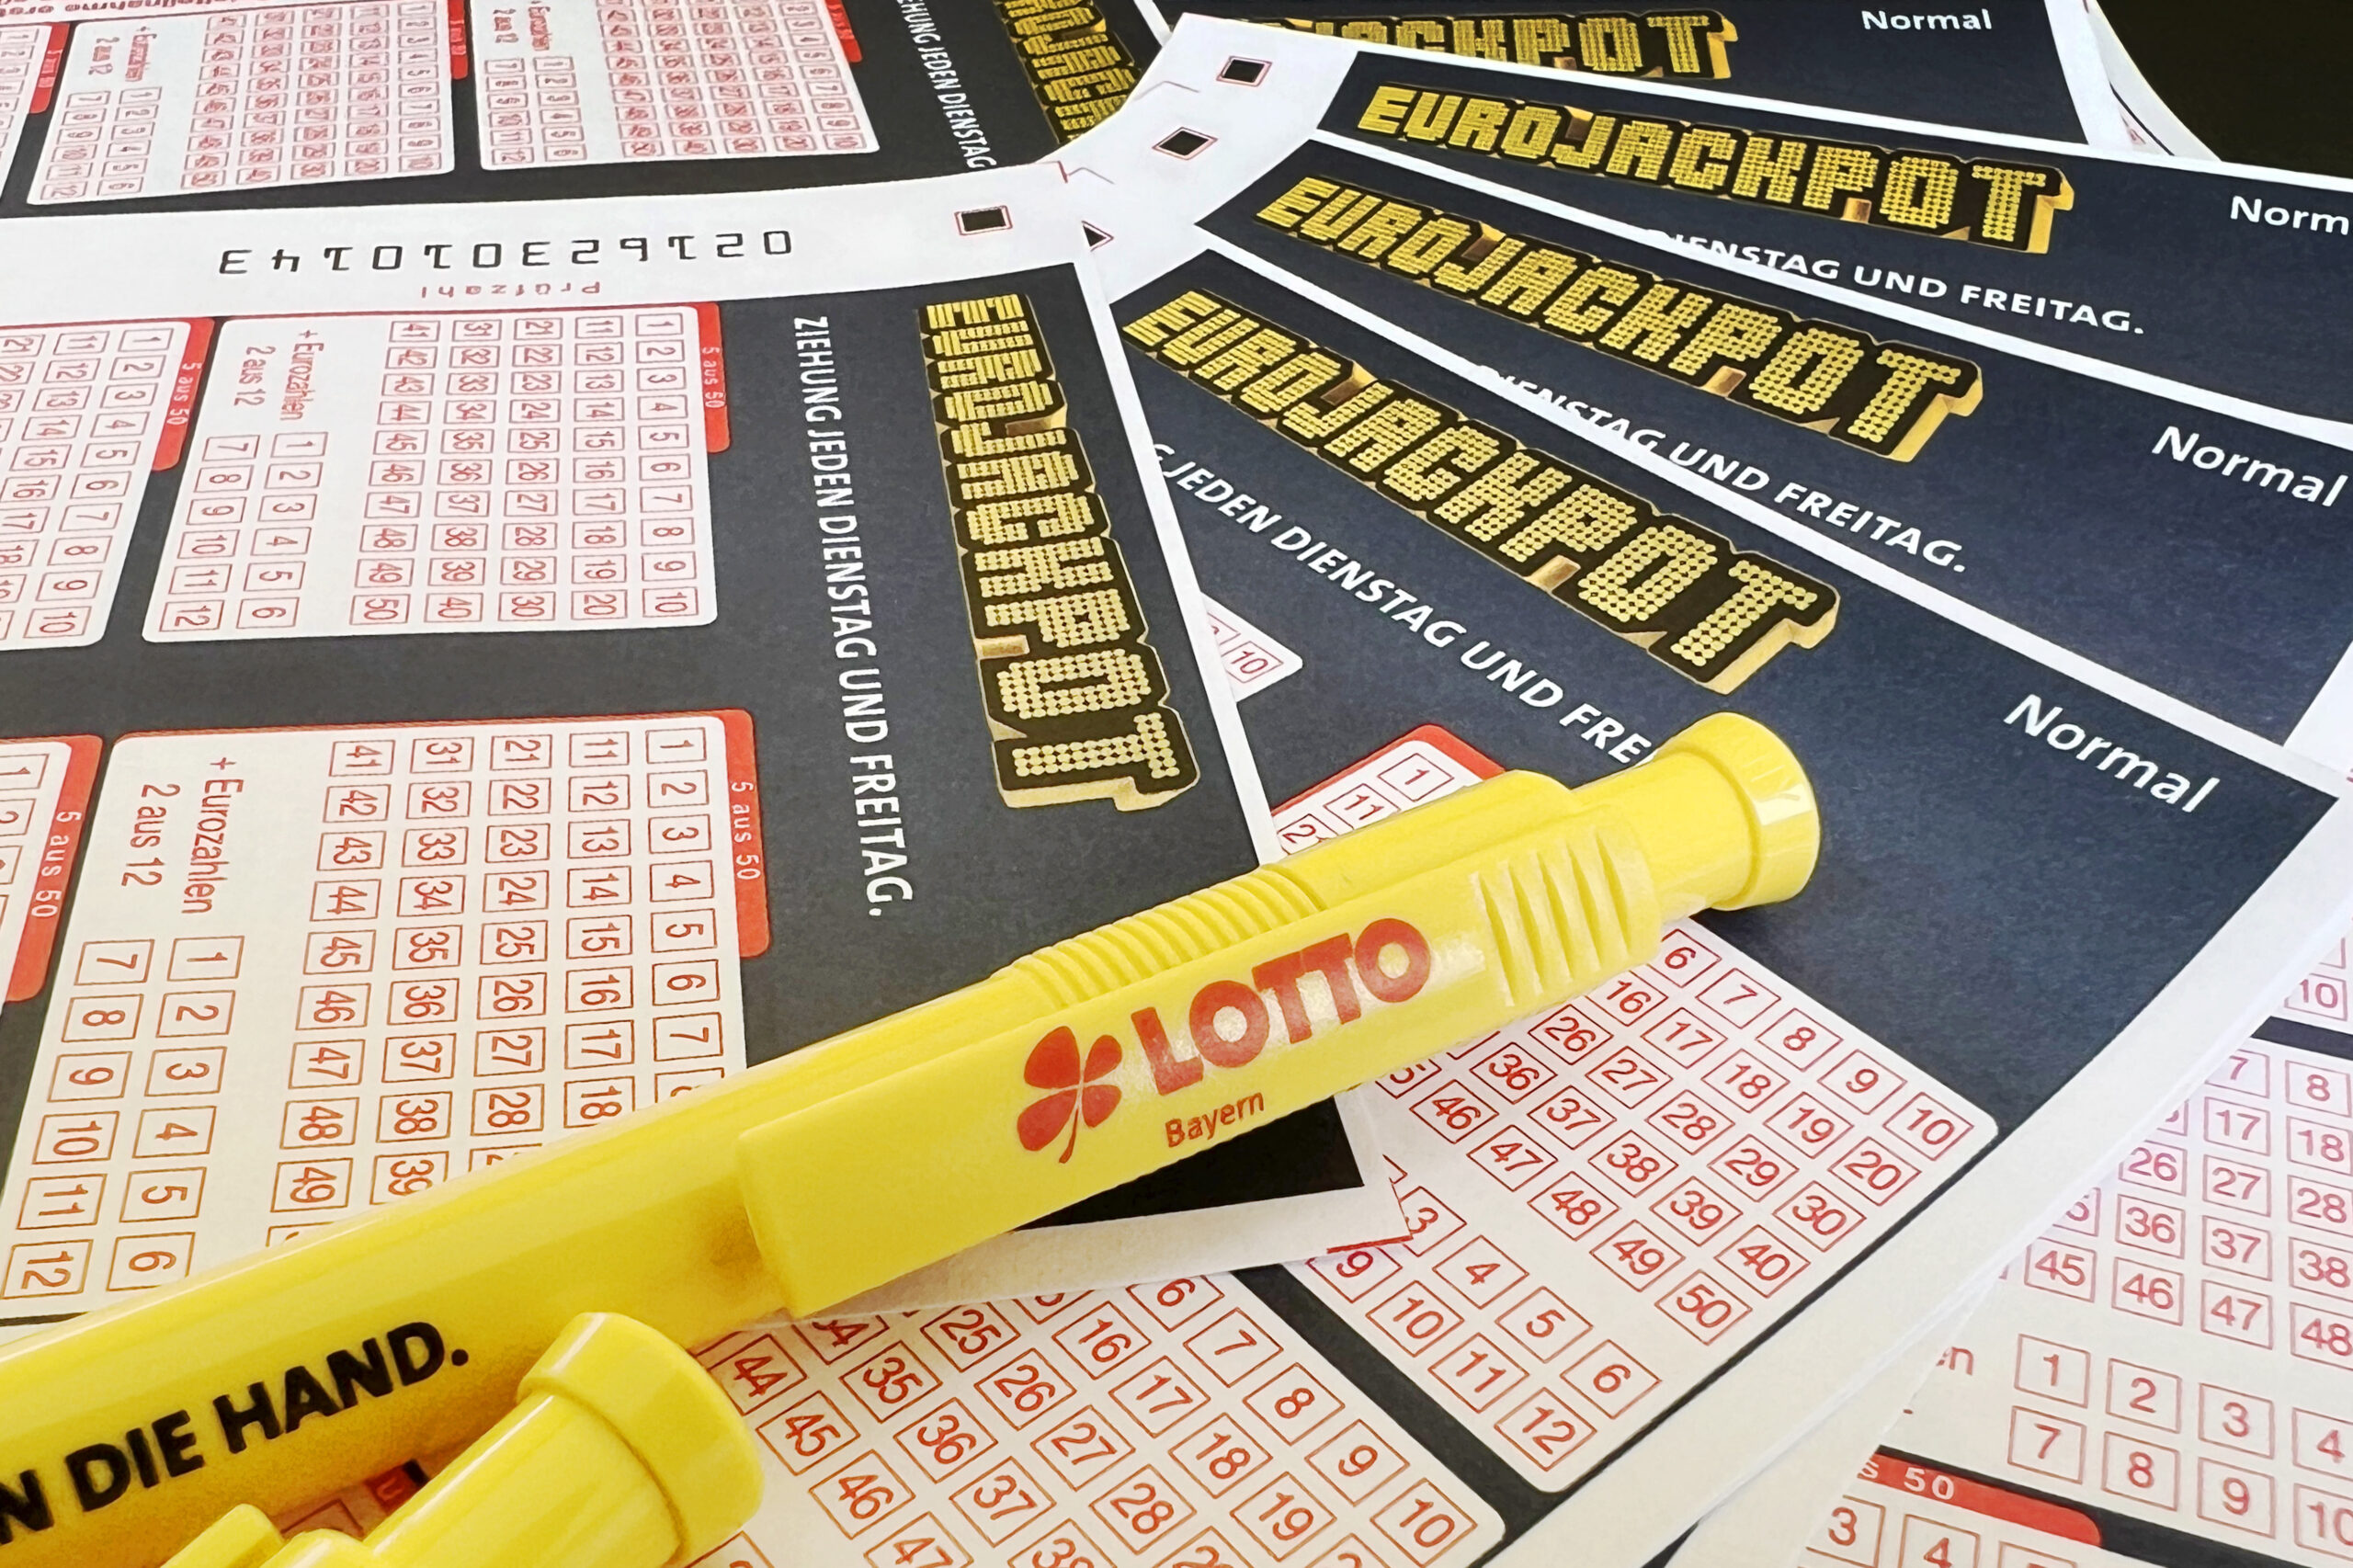 Lottoscheine des Eurojackpots